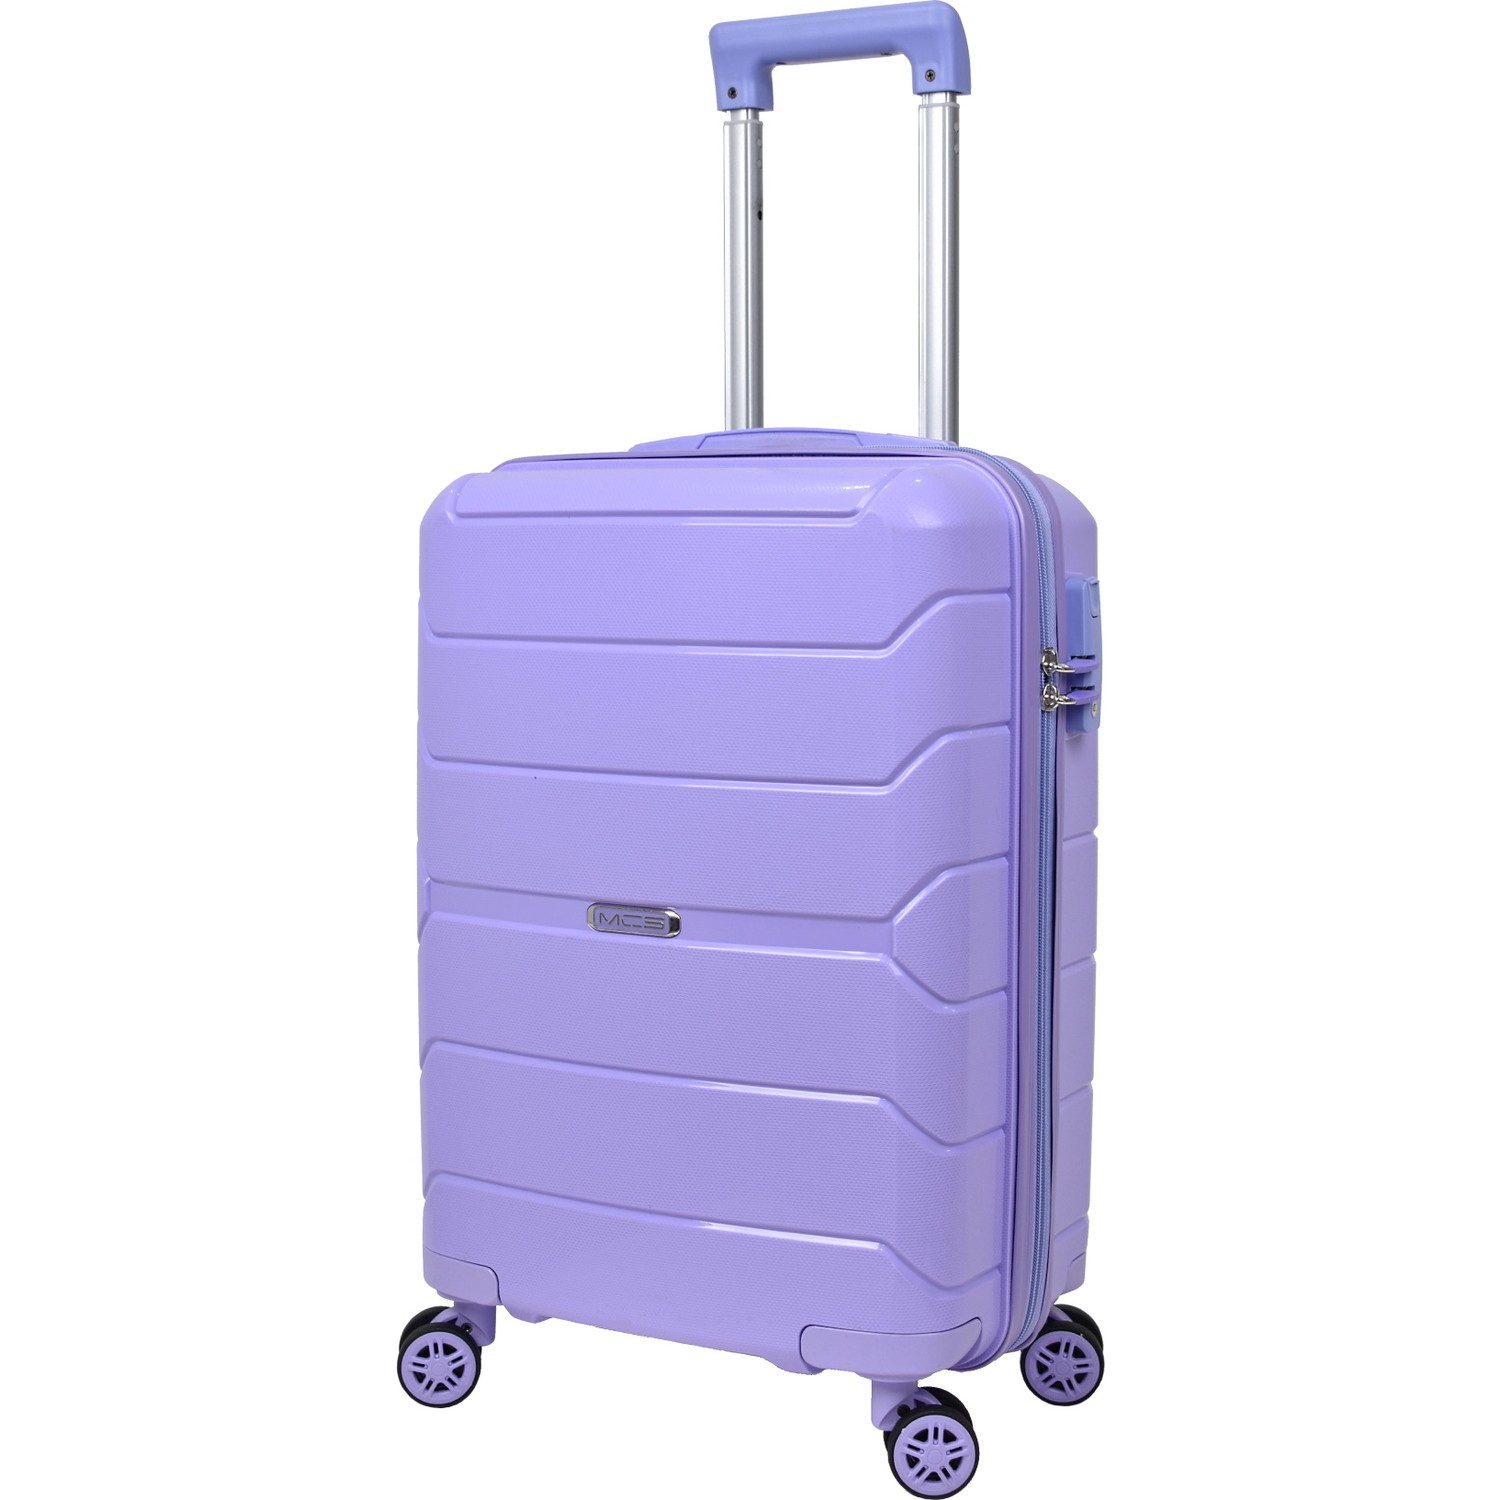 Маленький чемодан для ручьной клади из полипропилена MCS V366 S PURPLE! Для 8-10 кг! - 4